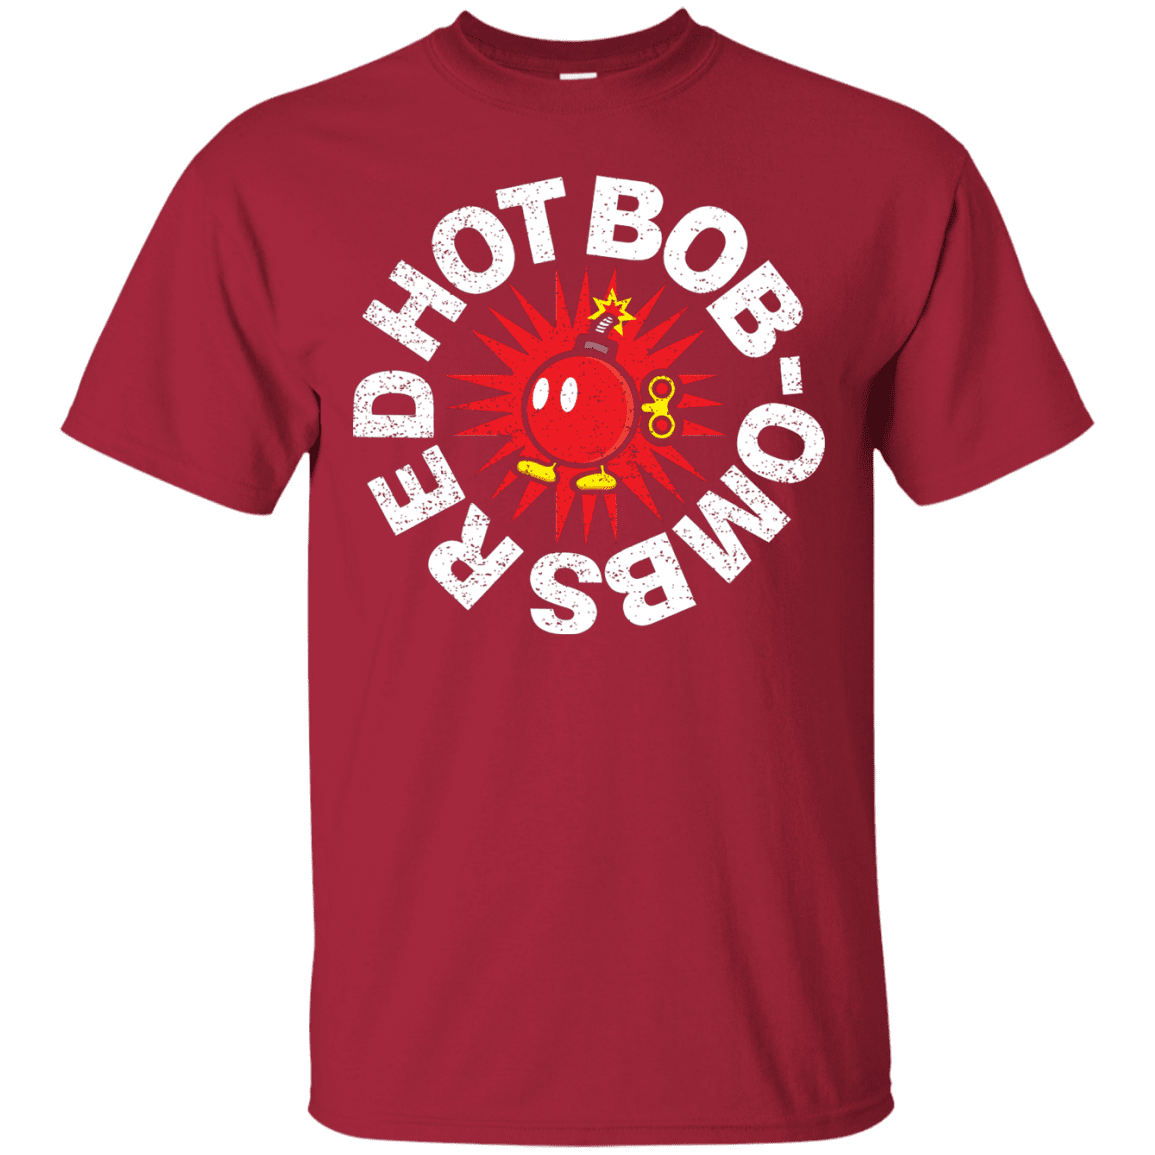 T-Shirts Cardinal / S Red Hot Bob-Ombs T-Shirt